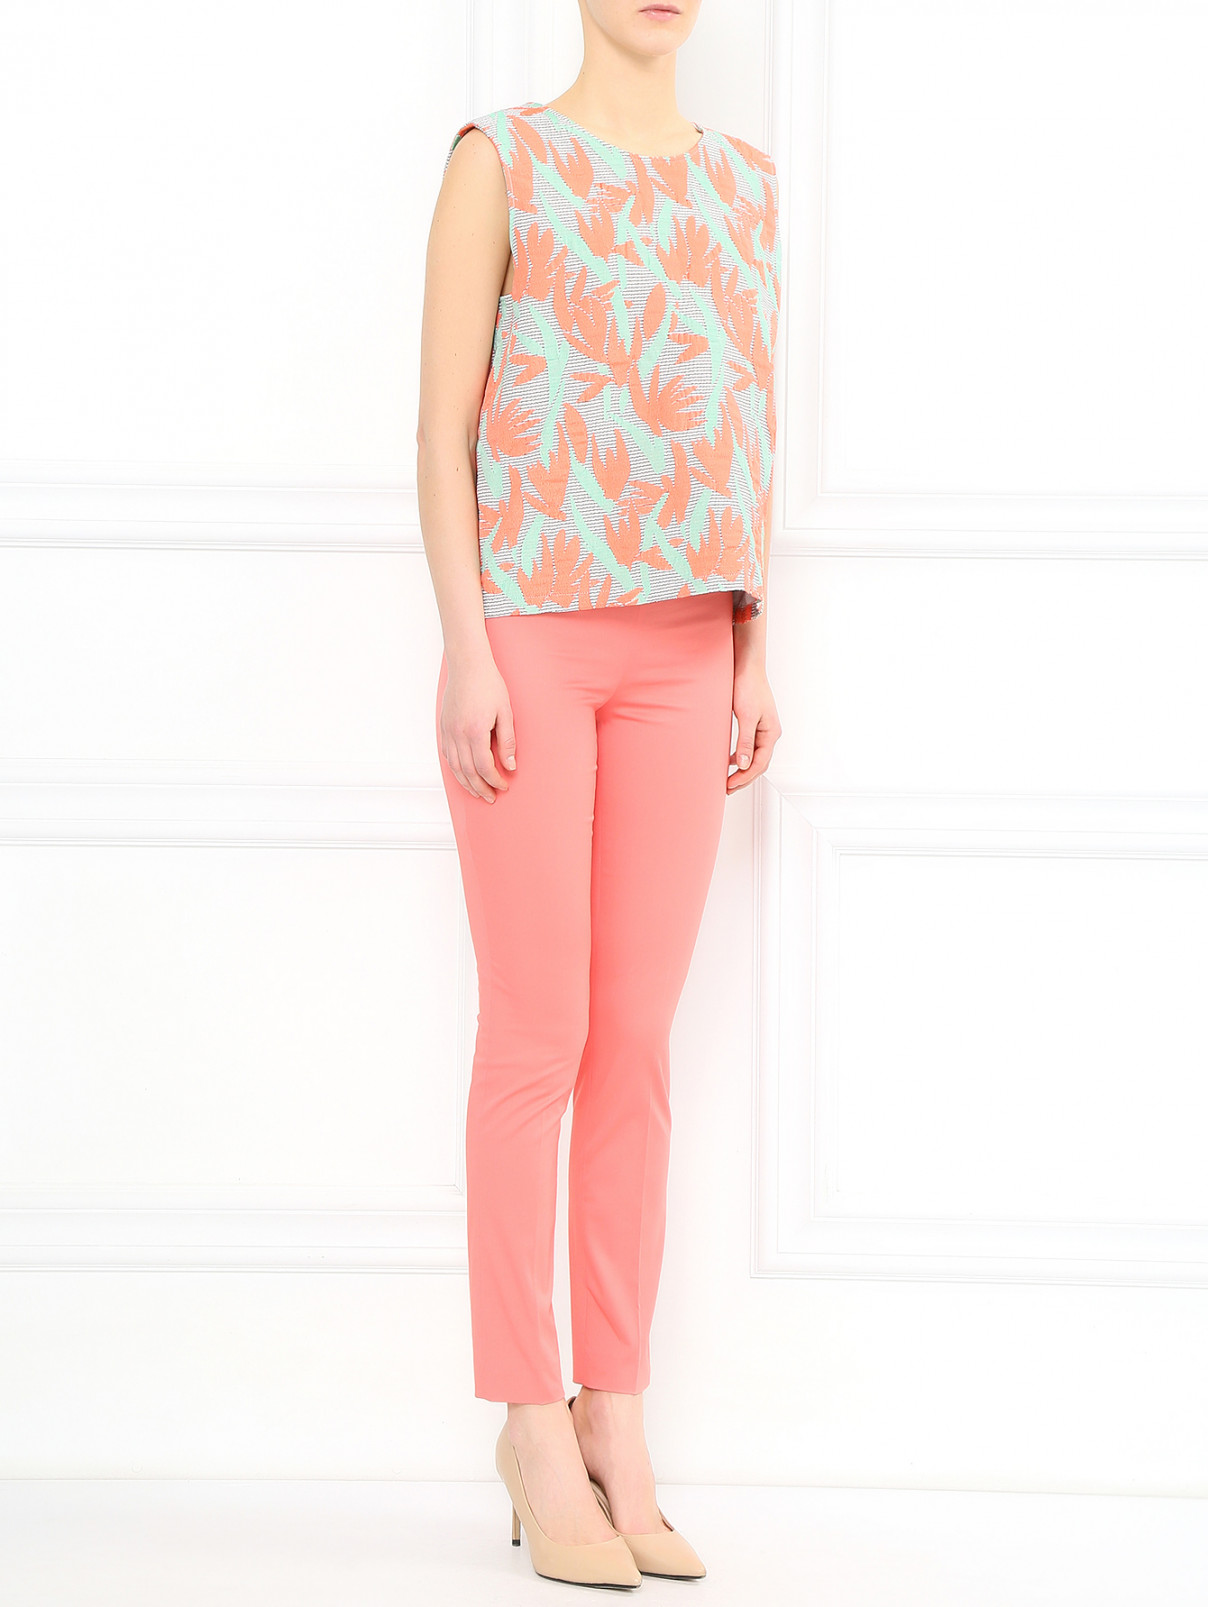 Узкие брюки из хлопка с боковыми карманами Moschino Cheap&Chic  –  Модель Общий вид  – Цвет:  Розовый